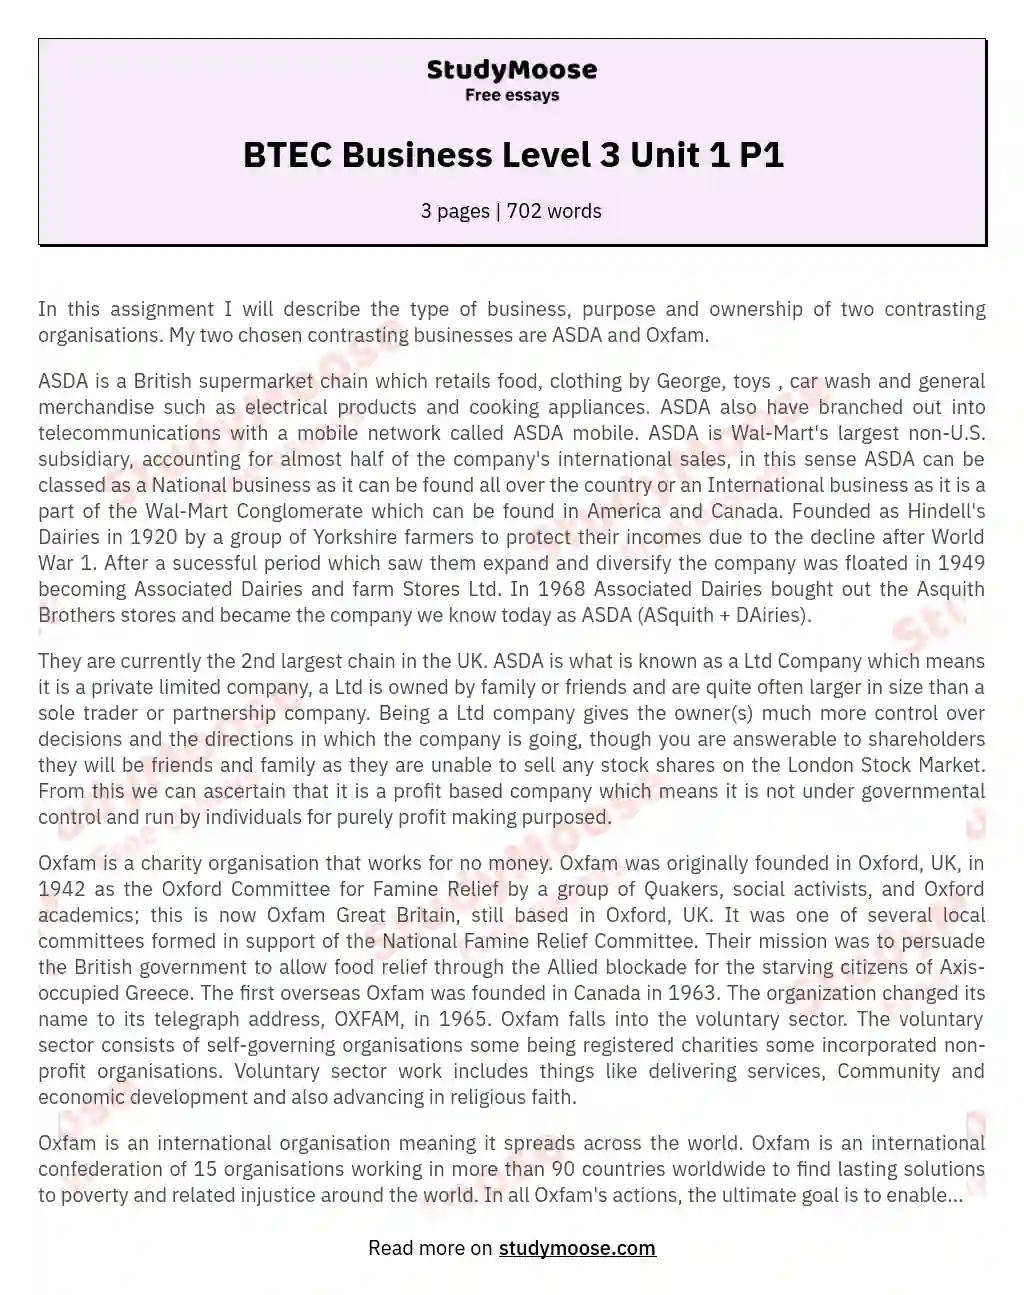 BTEC Business Level 3 Unit 1 P1 essay